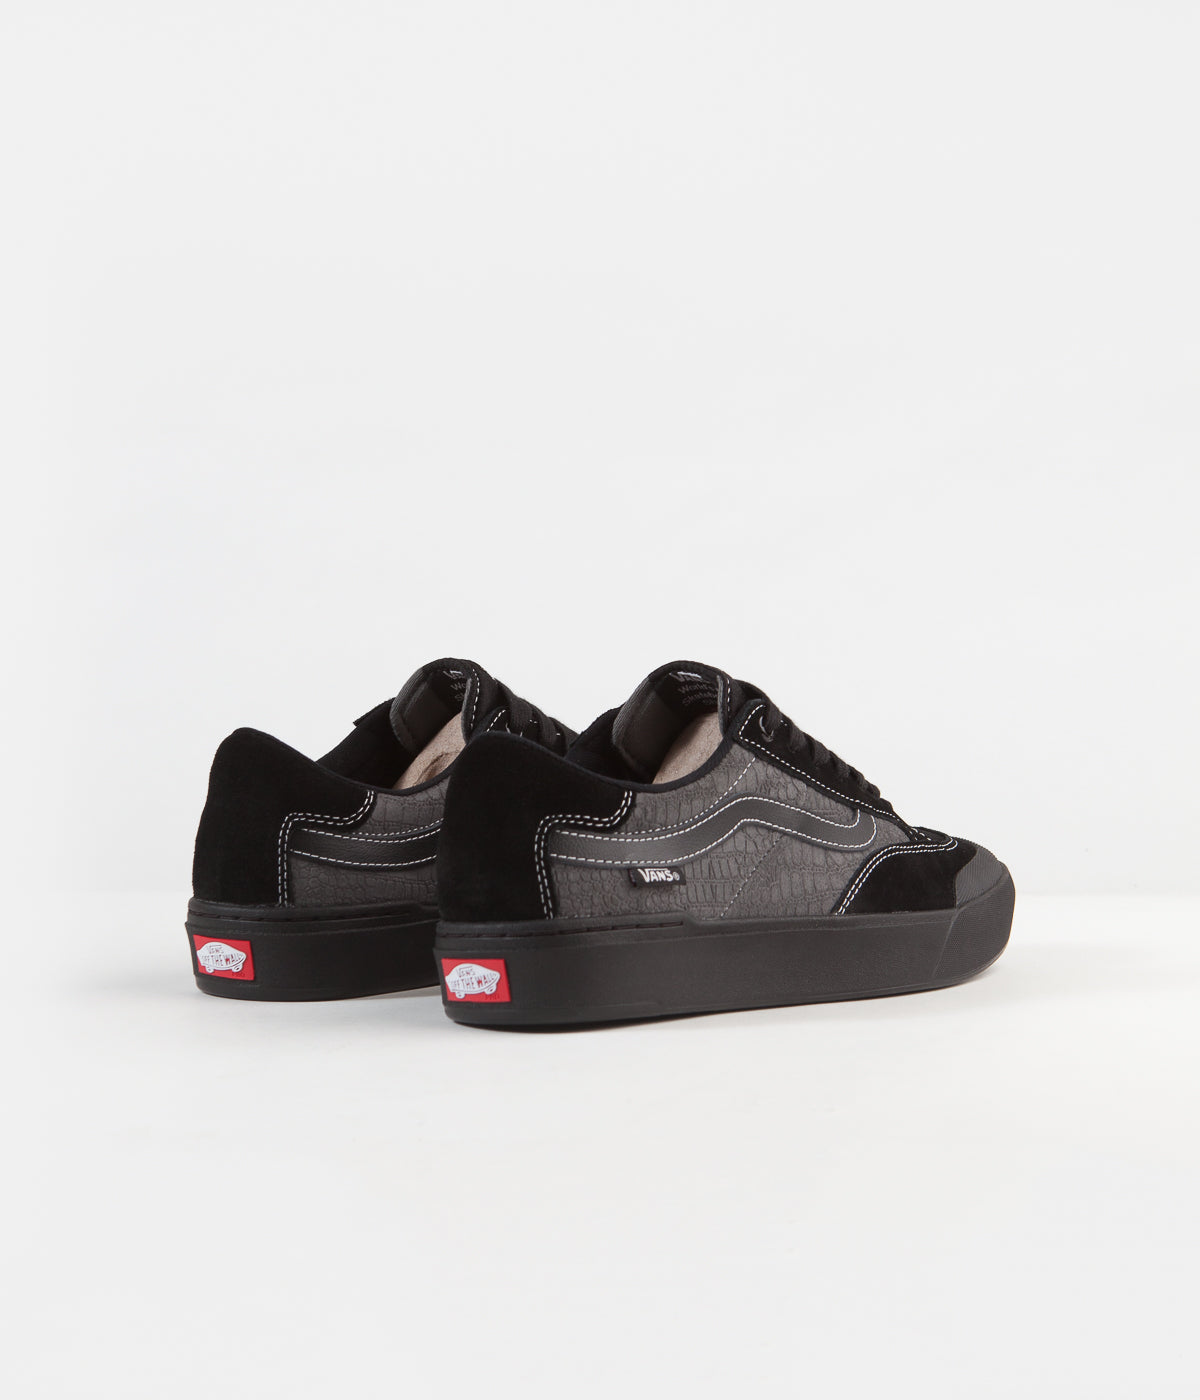 Vans Berle Pro Shoes - (Croc) Black 